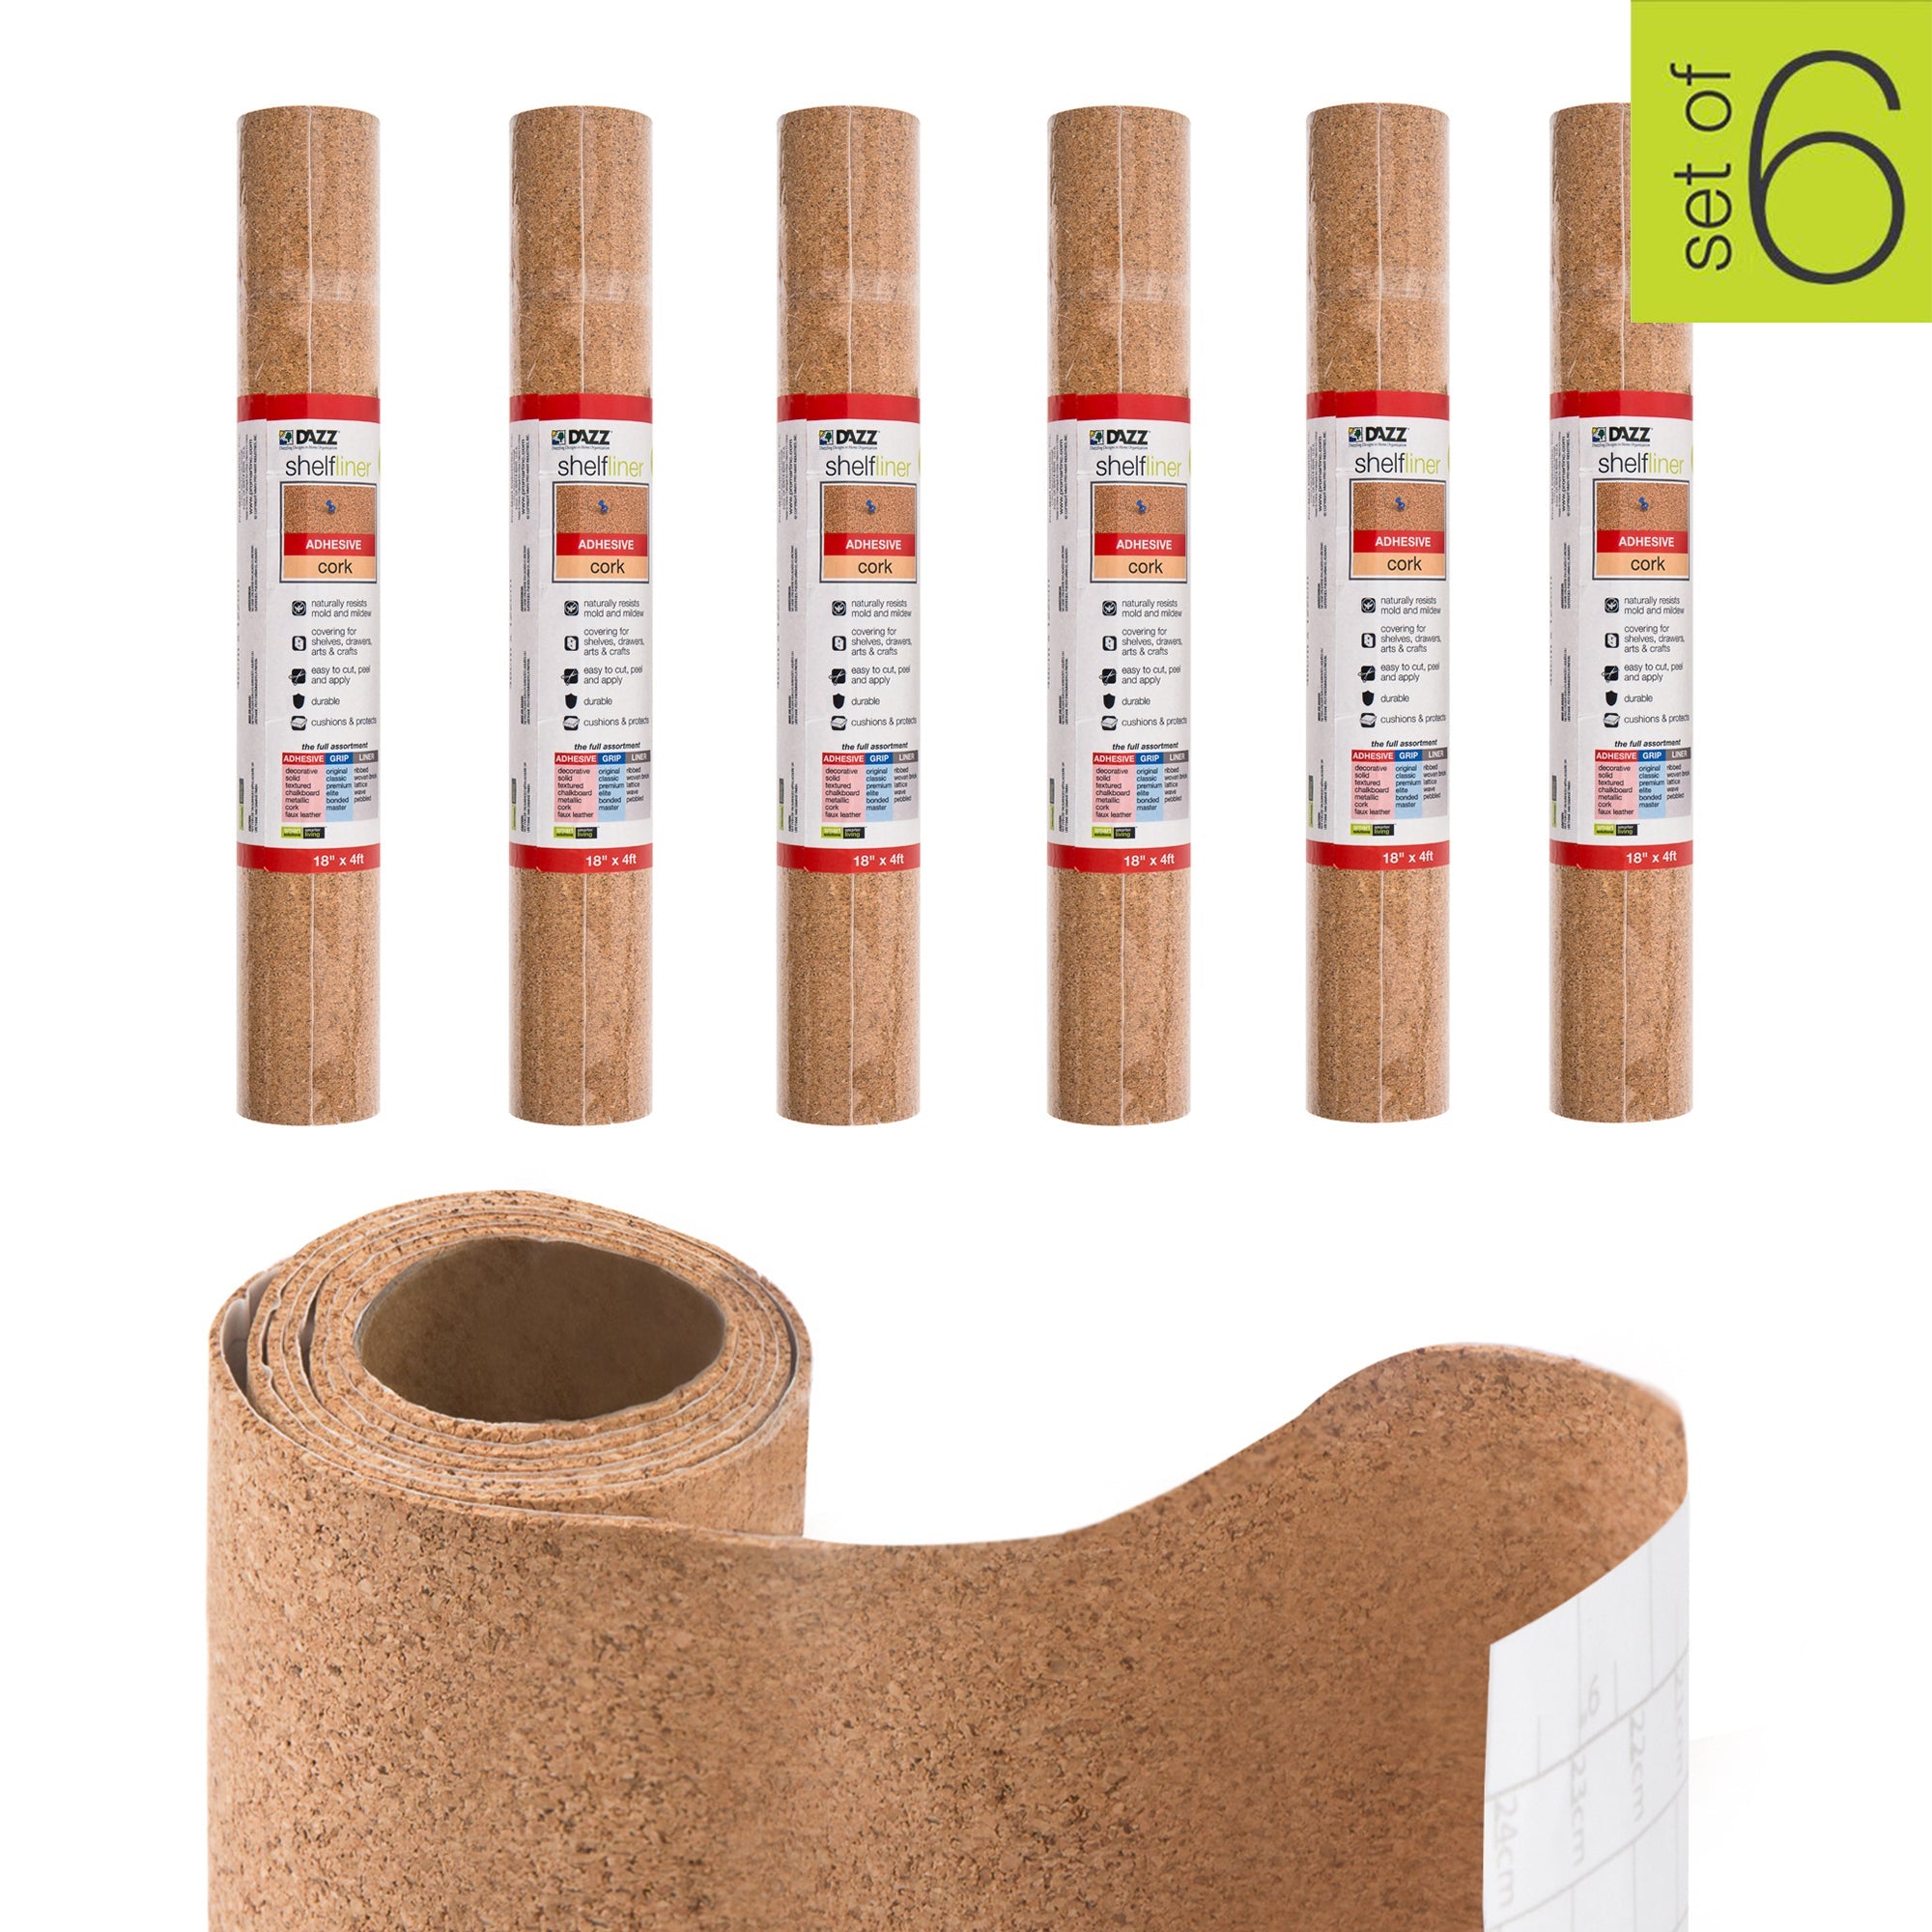 https://www.shopsmartdesign.com/cdn/shop/products/adhesive-shelf-liner-cork-smart-design-shelf-liner-8652143as6-incrementing-number-710483.jpg?v=1679345367